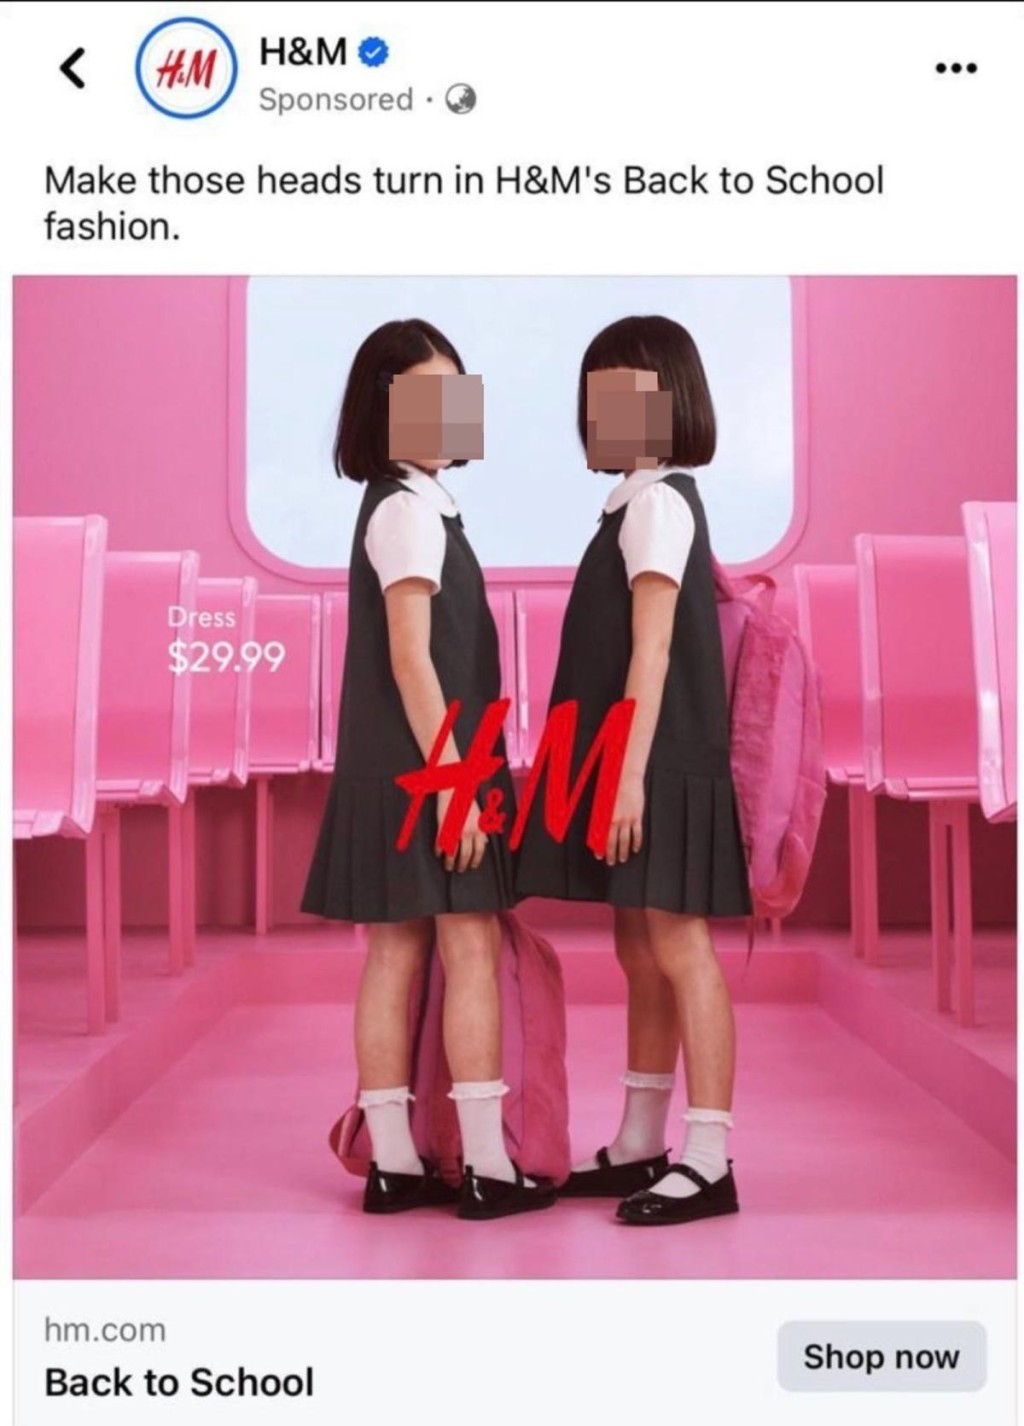 廣告視覺焦點是2名小女生，她們都穿著短袖白色短袖襯衫、外罩無袖黑色連身學生裙，裙長為膝上高度，並搭配白襪和黑色漆皮鞋。網上圖片